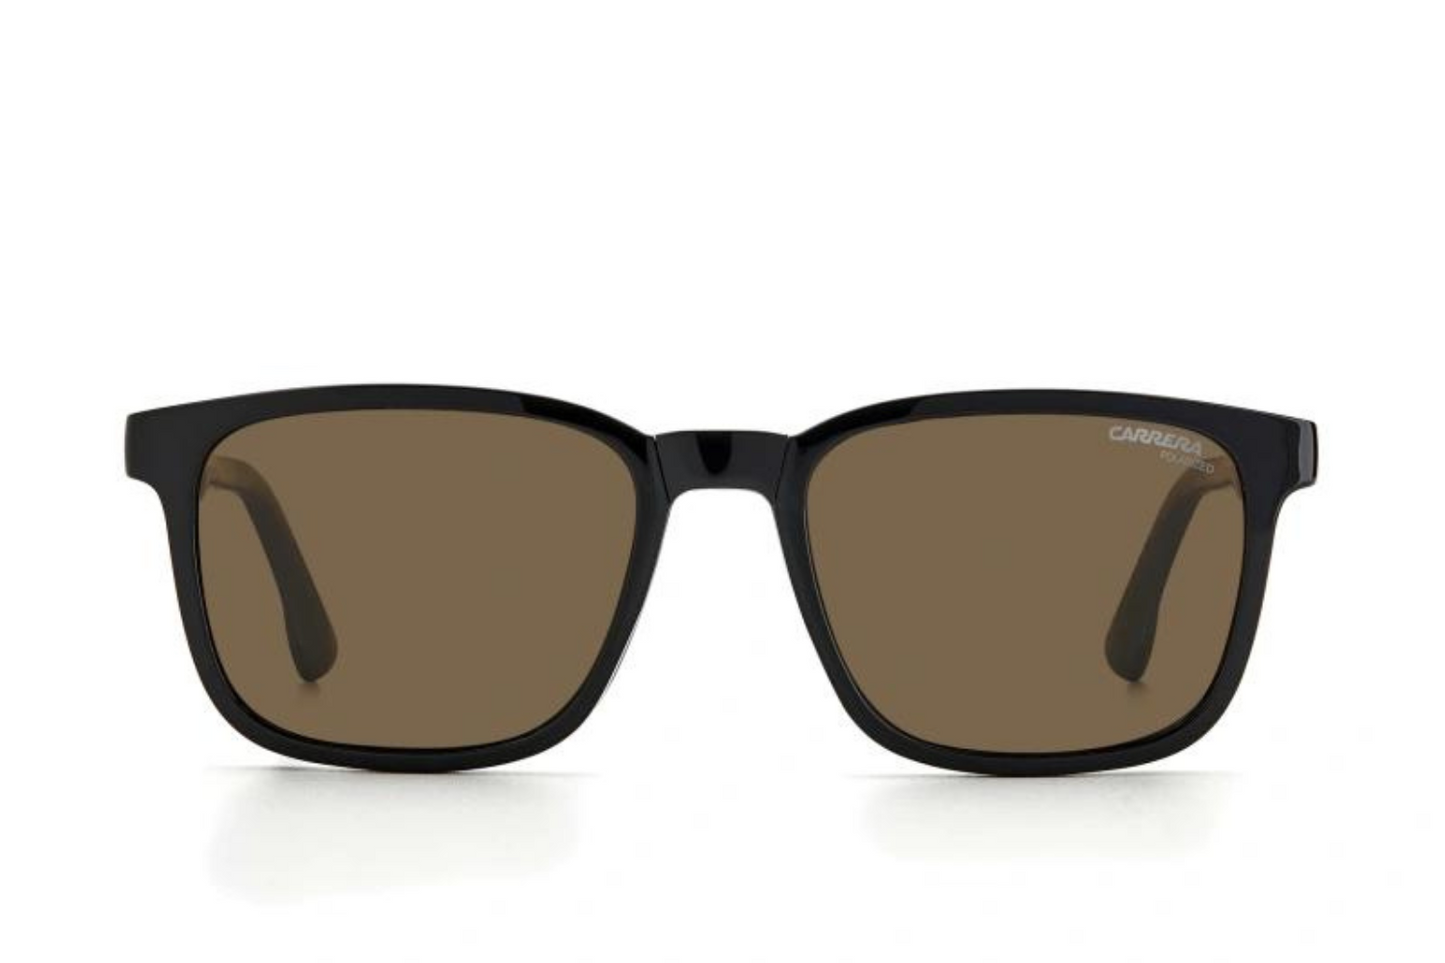 Carrera Sunglasses 8045/S 807 Clip On POLARIZED